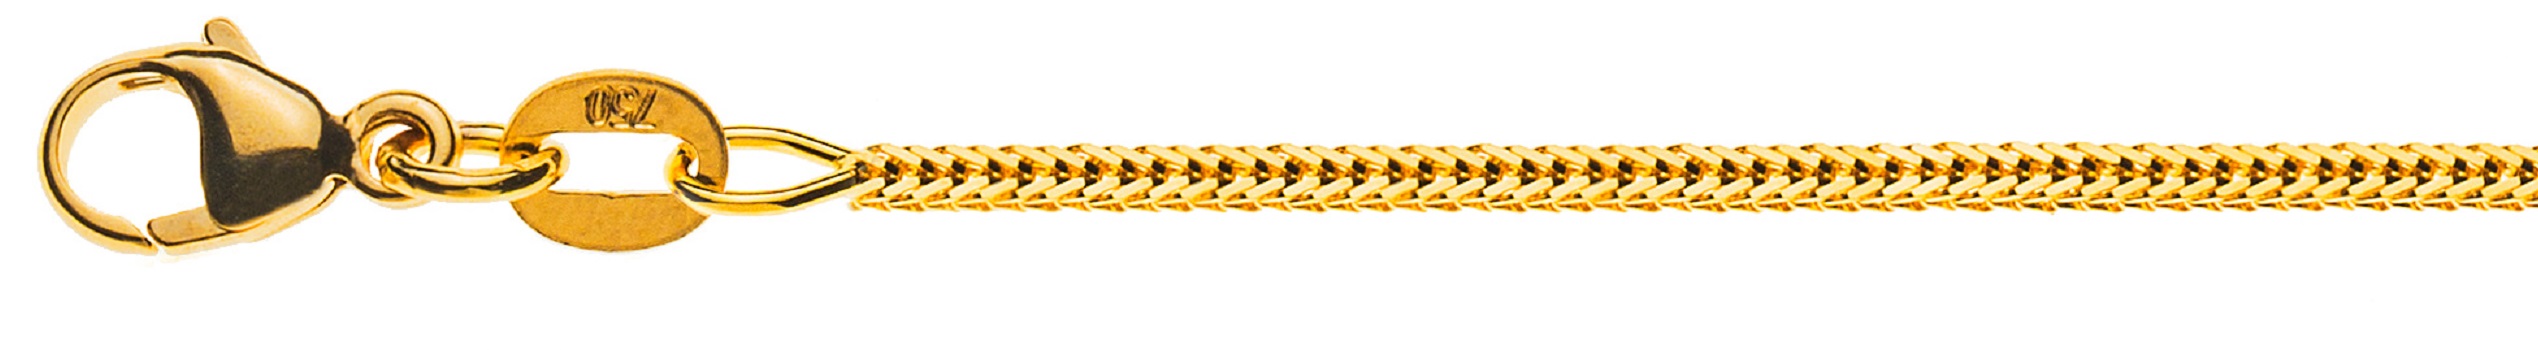 AURONOS Prestige Collier en or jaune 18K queue de renard diamantée 45cm 1.2mm